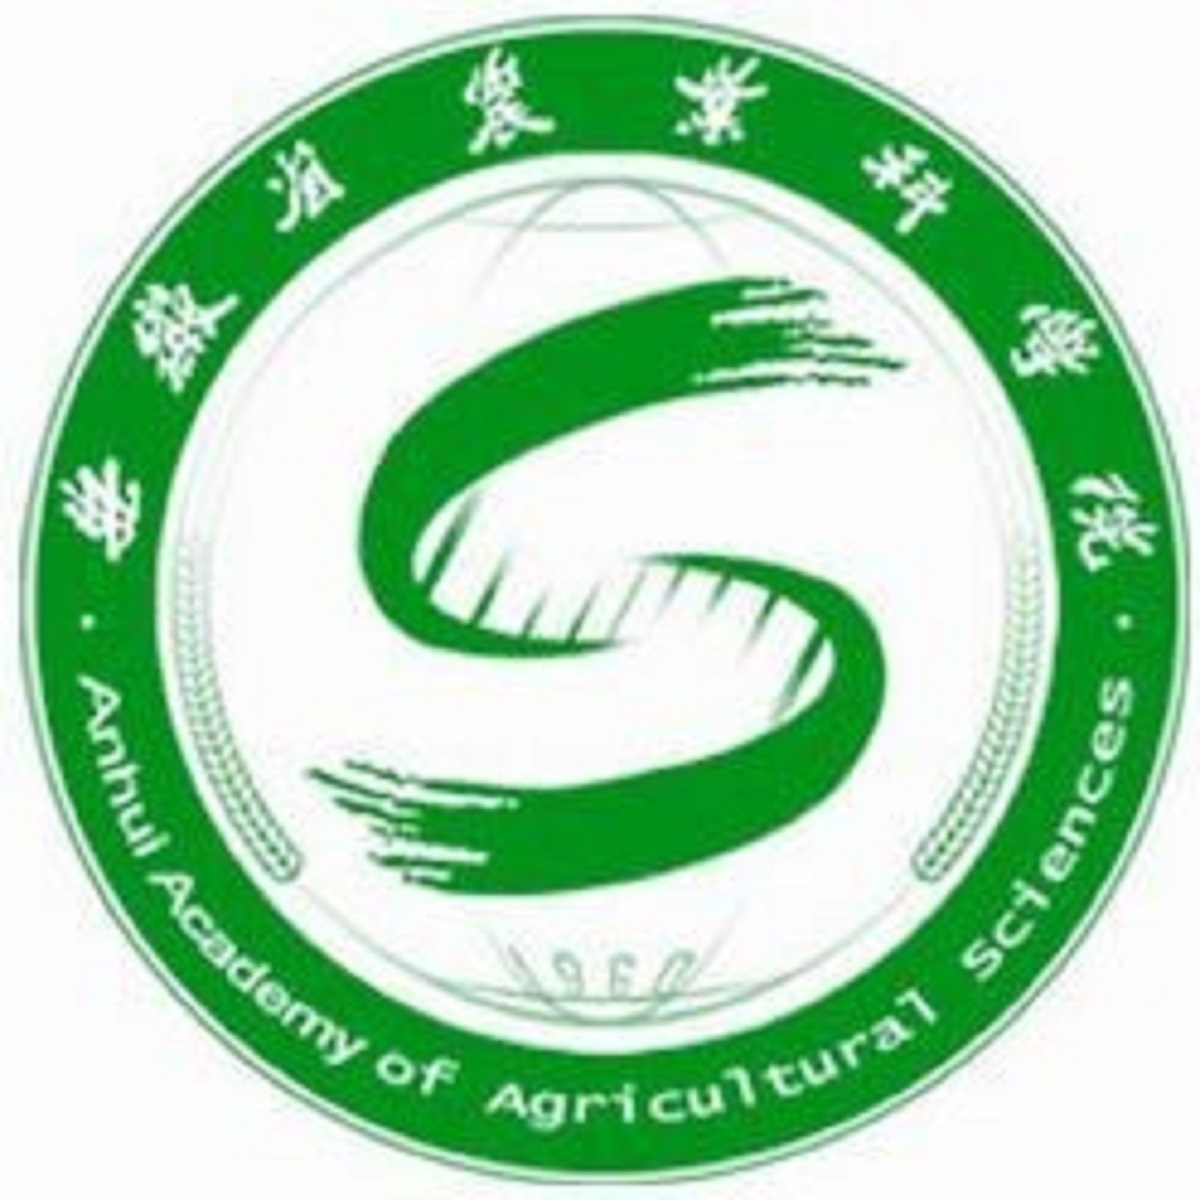 安徽省農業科學院